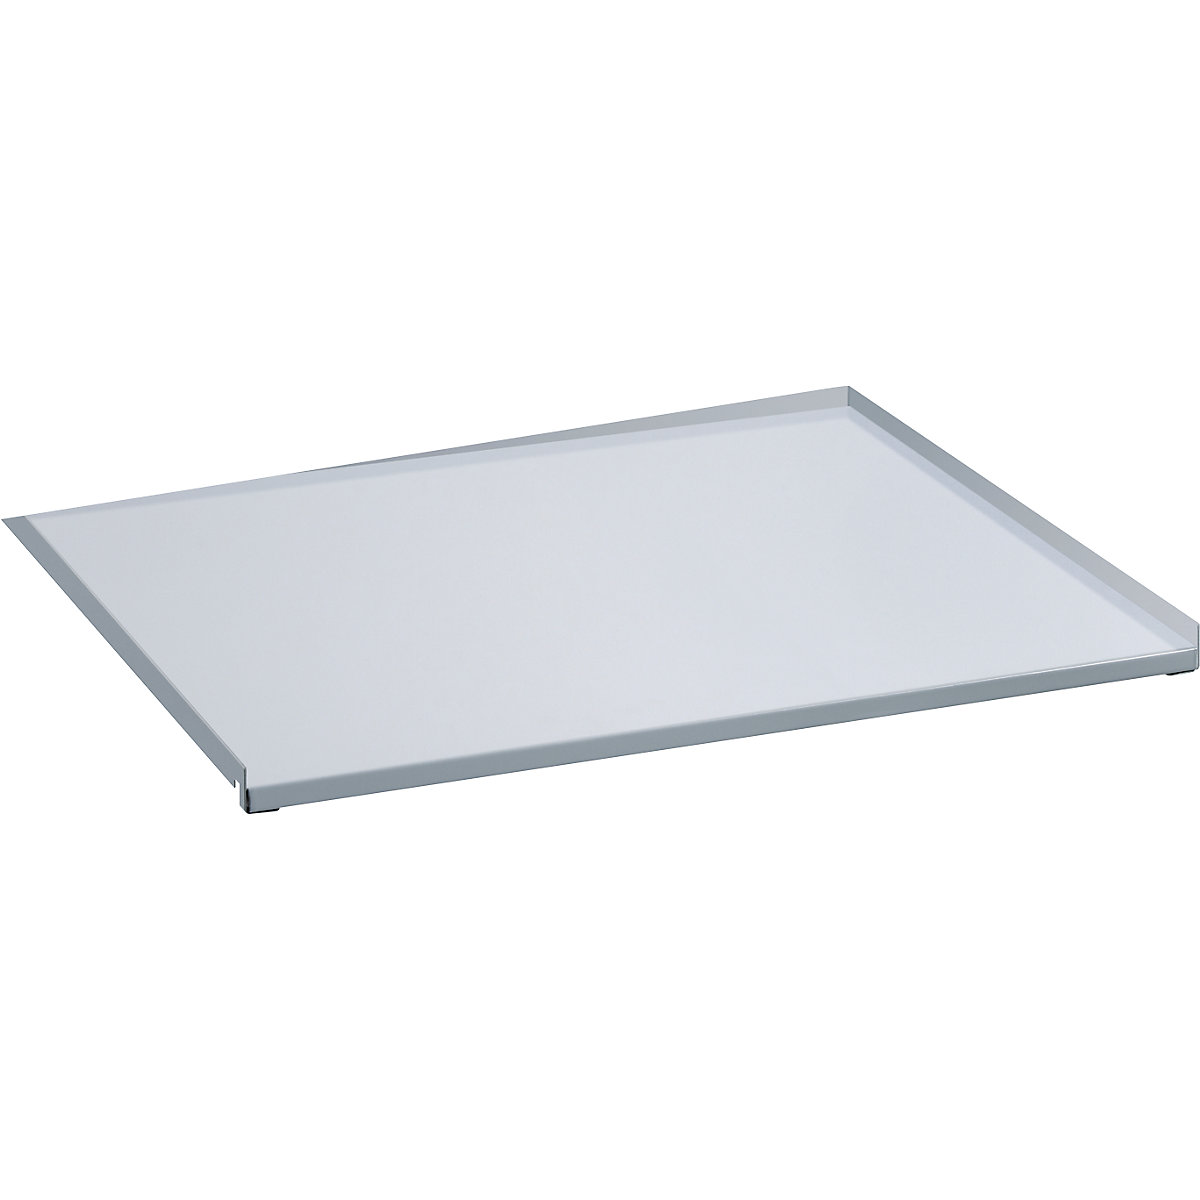 Cubierta de chapa para marco extraíble – LISTA, extracción total, para A x P 890 x 860 mm, gris luminoso-2